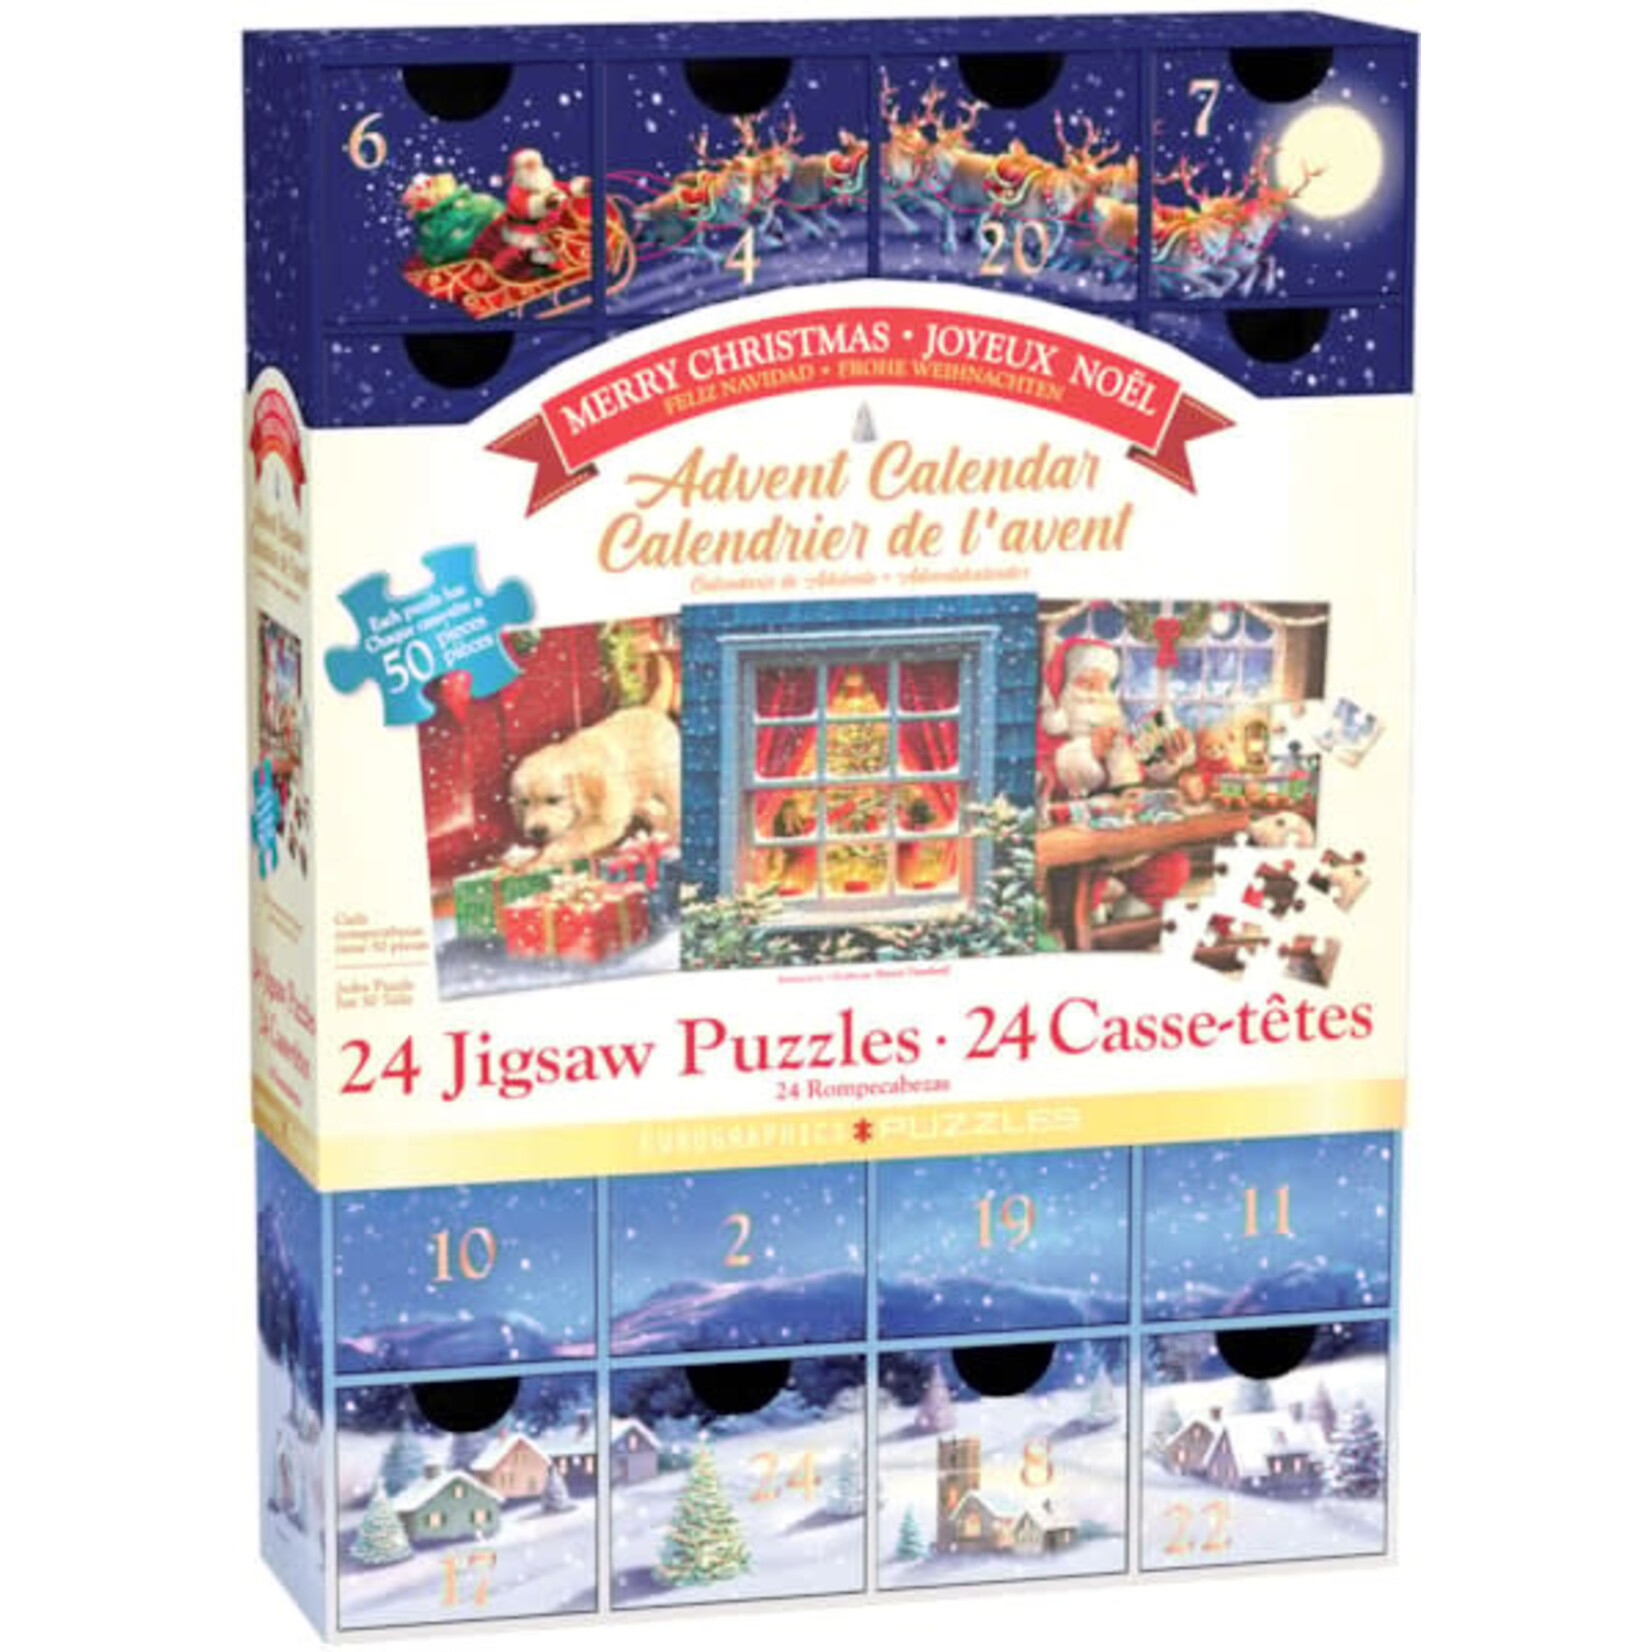 Advent Calendar Puzzles - Merry Christmas